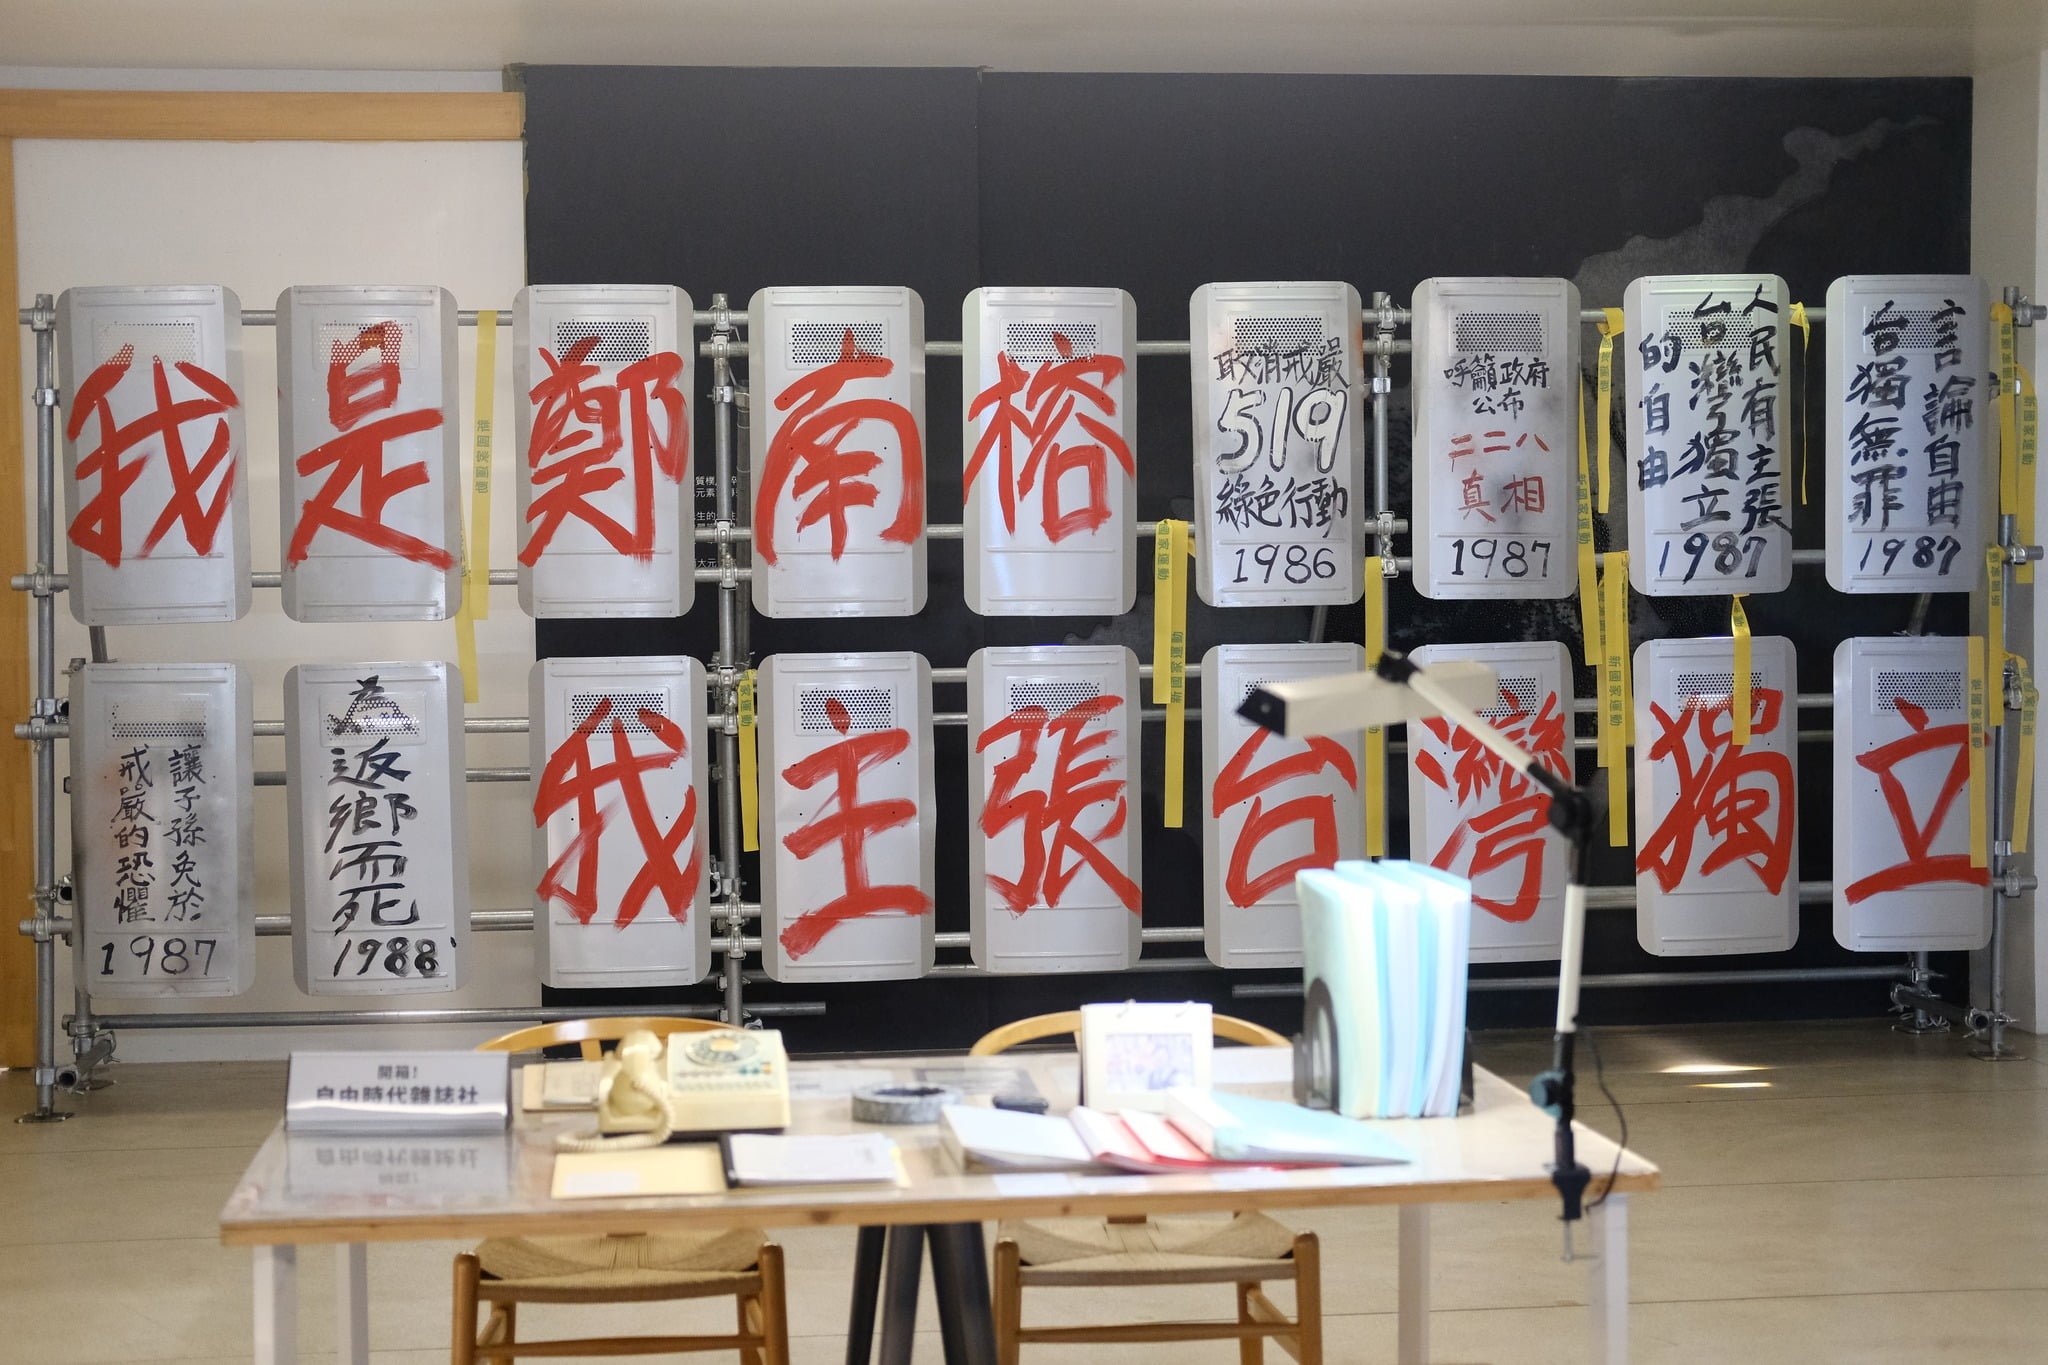 鄭南榕自由紋理在陳定南紀念館展覽